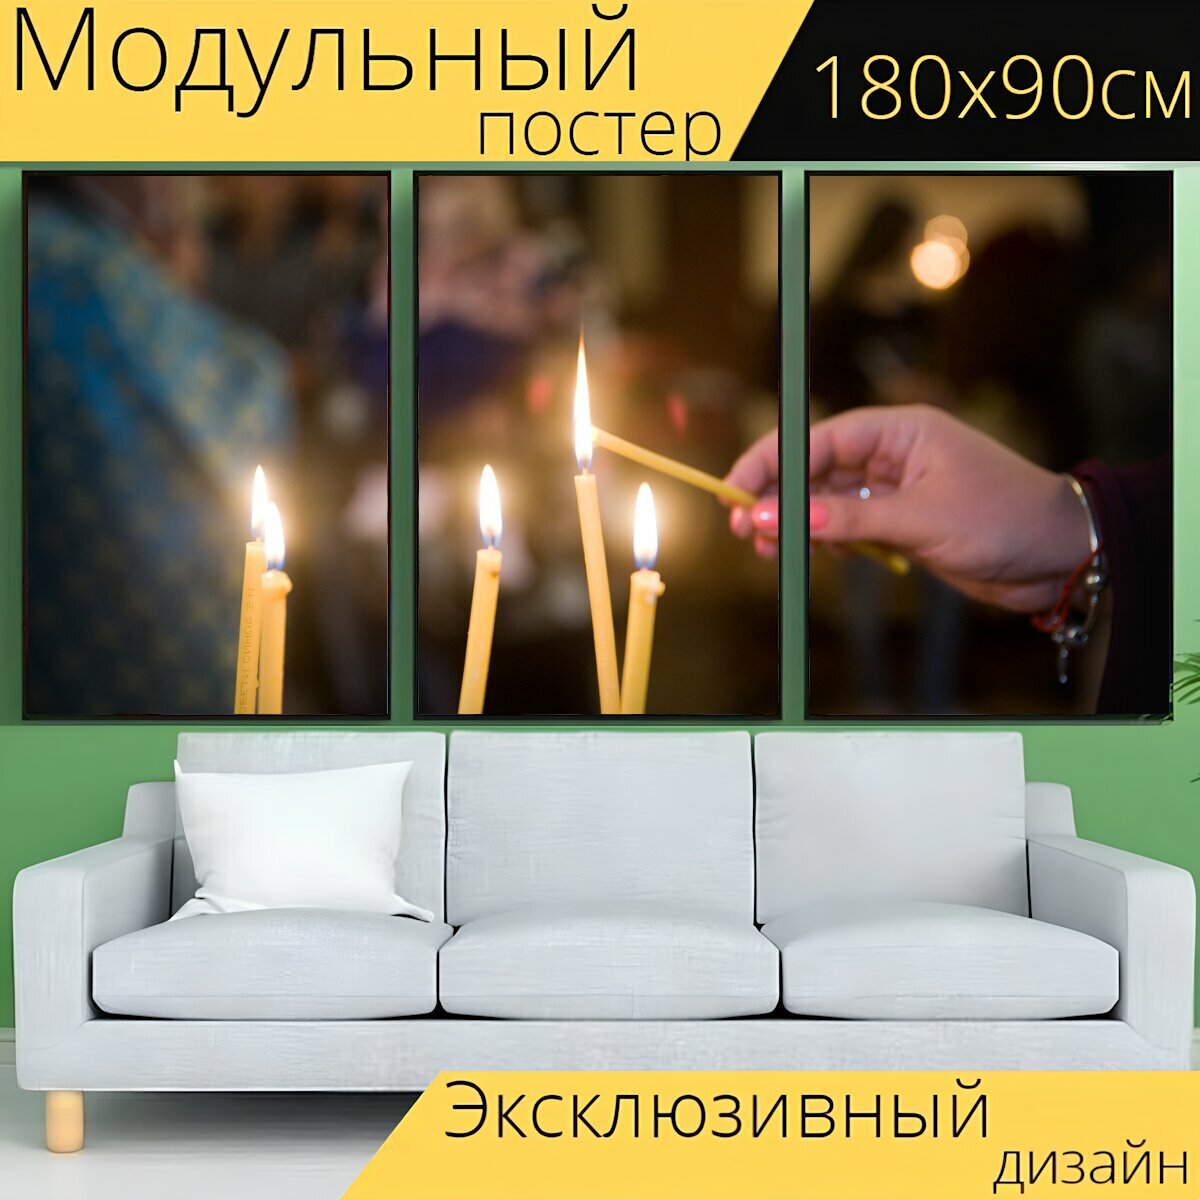 Модульный постер "Церковь, свеча, религия" 180 x 90 см. для интерьера